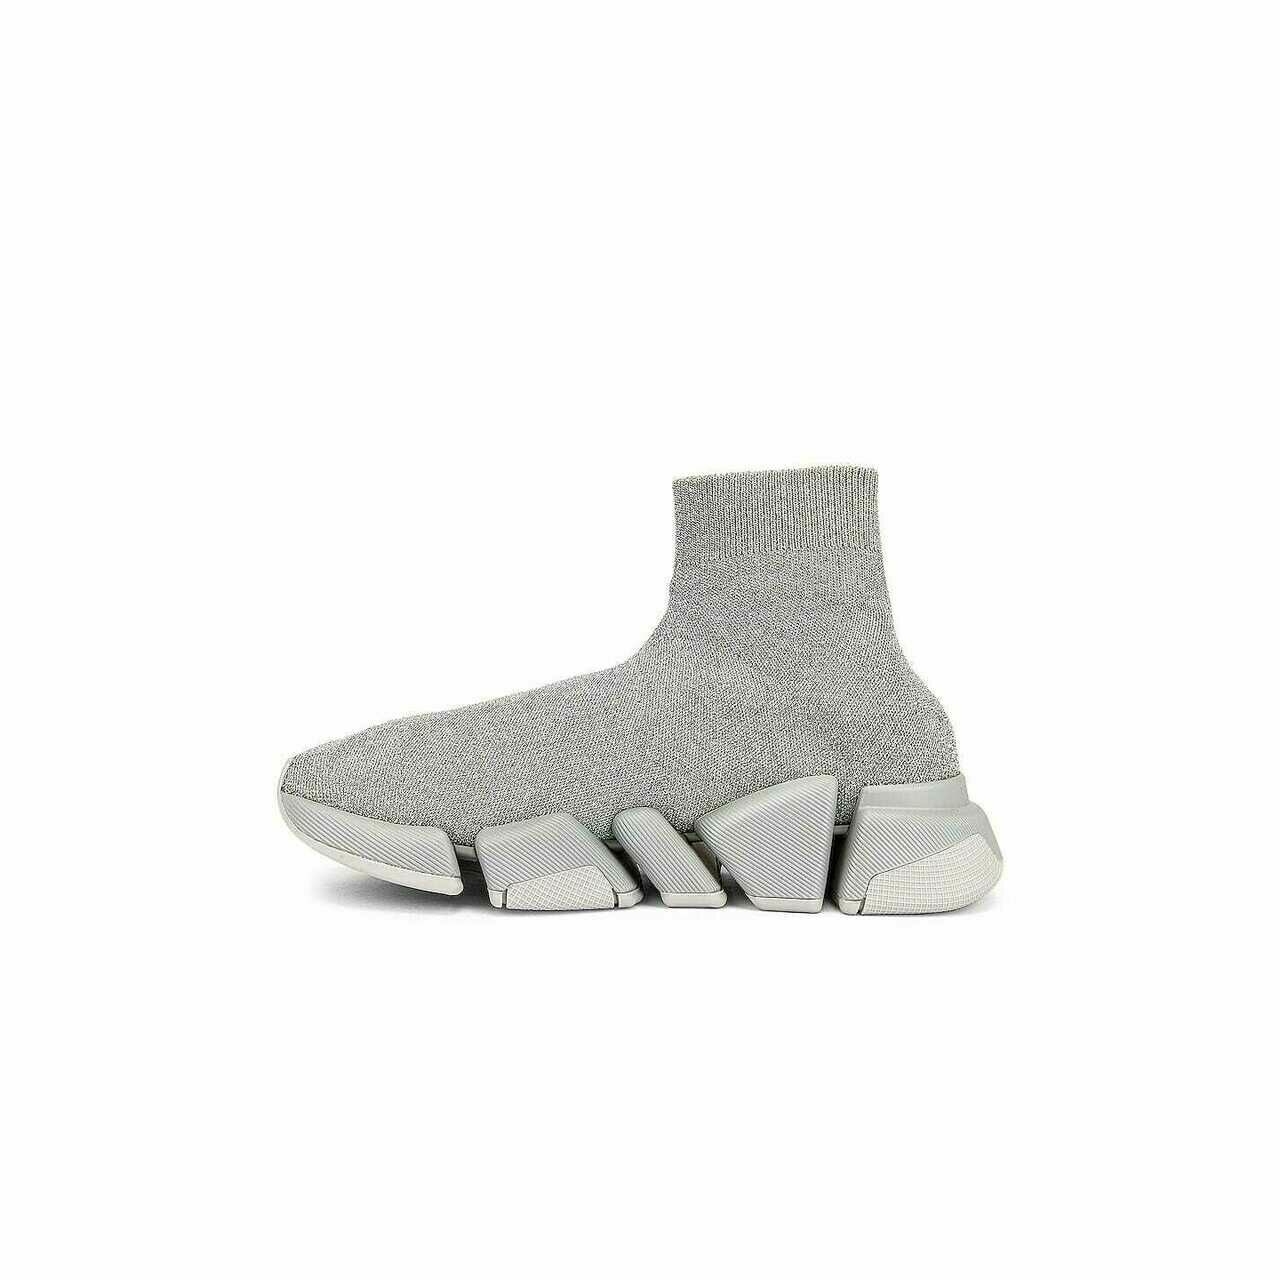 Balenciaga Grey Sneakers